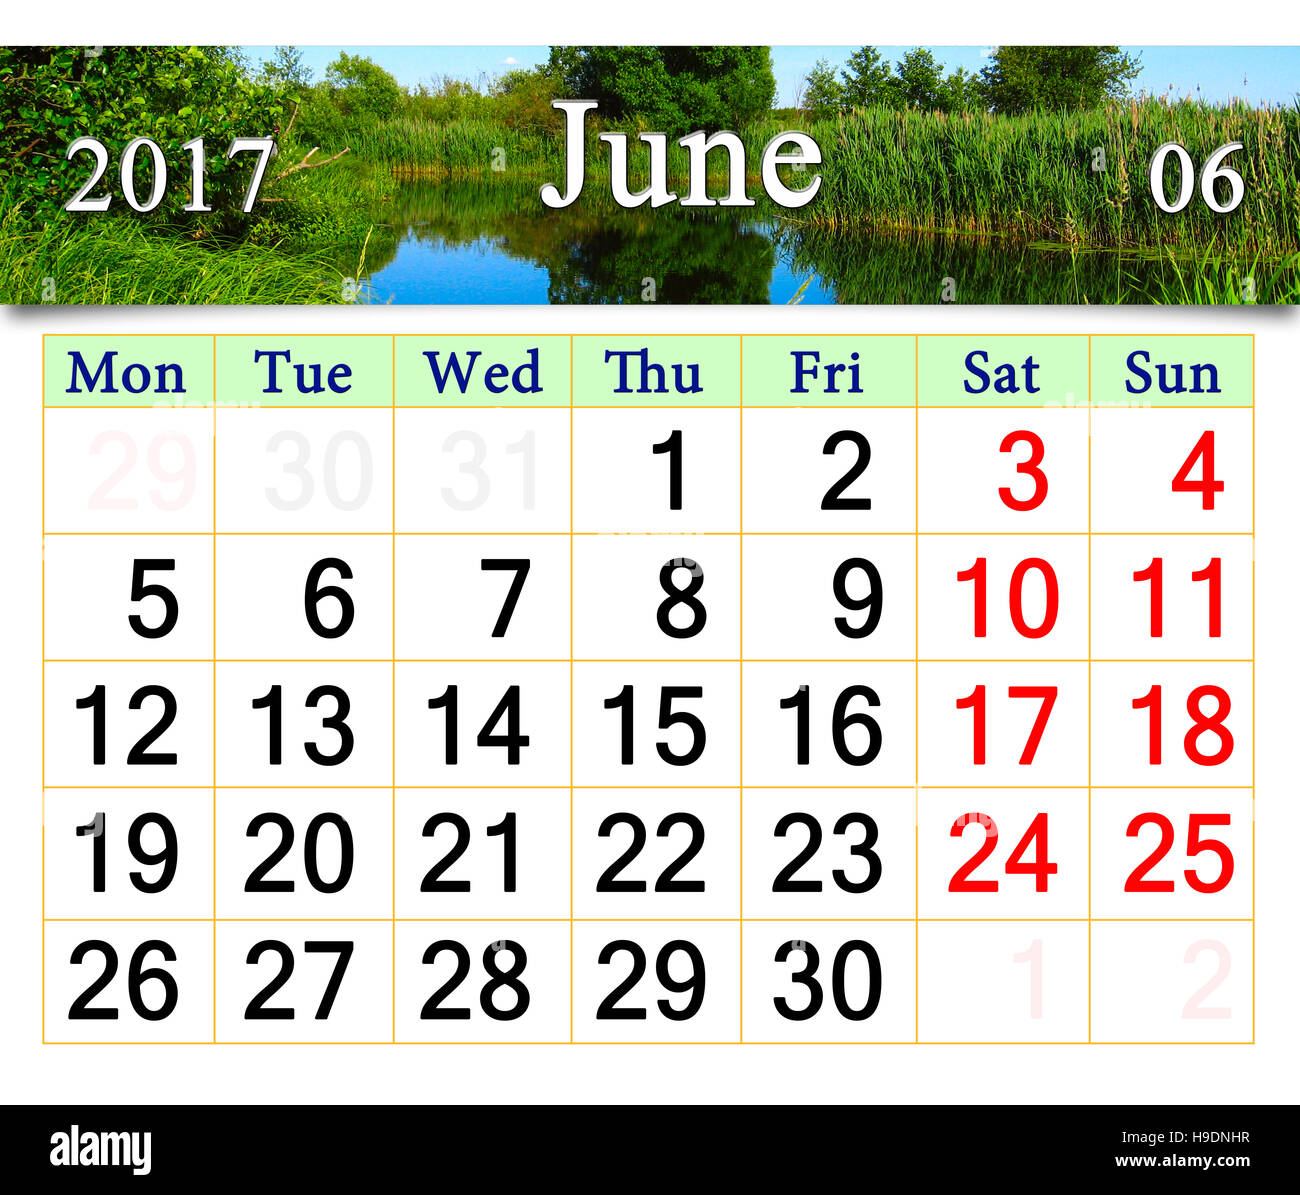 Kalender für Juni 2017 auf dem Hintergrund des Sees. Kalender für das Drucken und verwenden im Büroalltag. Stockfoto